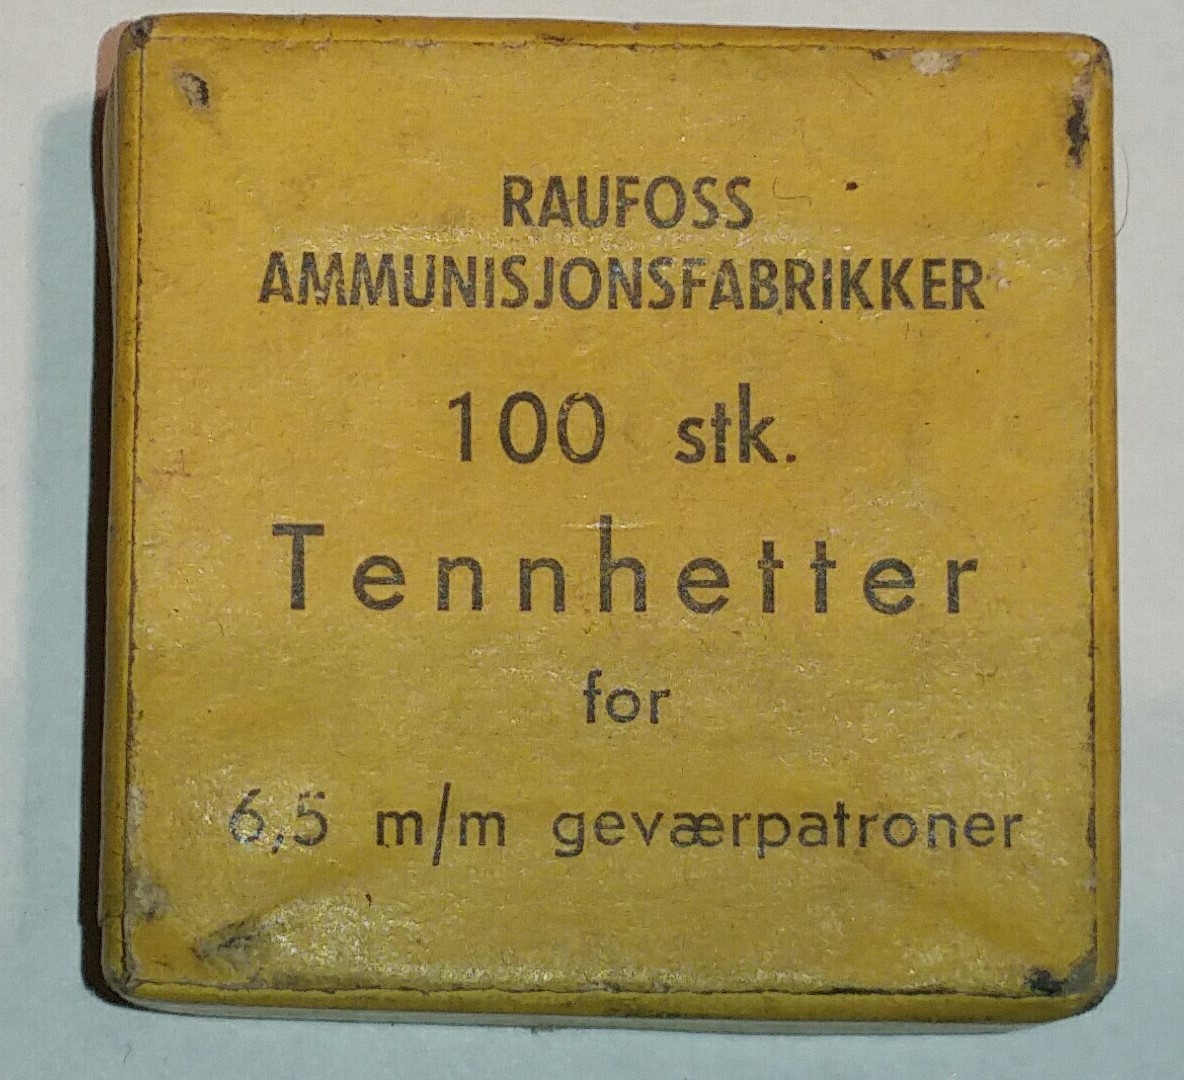 ./ammo/ladekomponenter/bilder/Ladekomponent-Tennhetter-Raufoss-100eske-65mm-Trykk-1.jpg